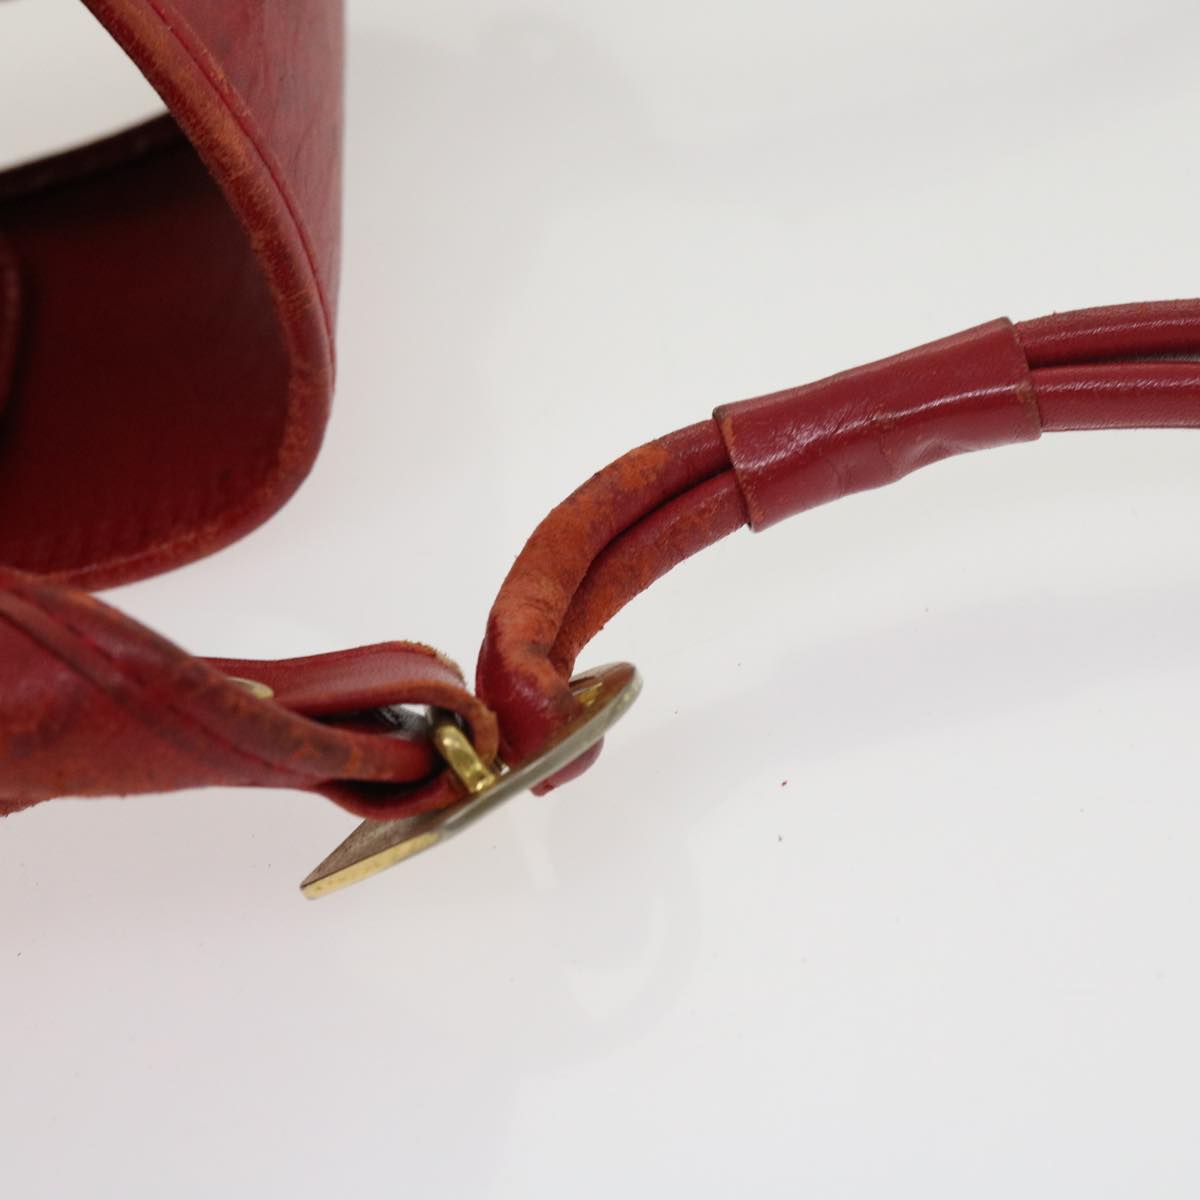 SAINT LAURENT Shoulder Bag PVC Leather Red Auth ar10186